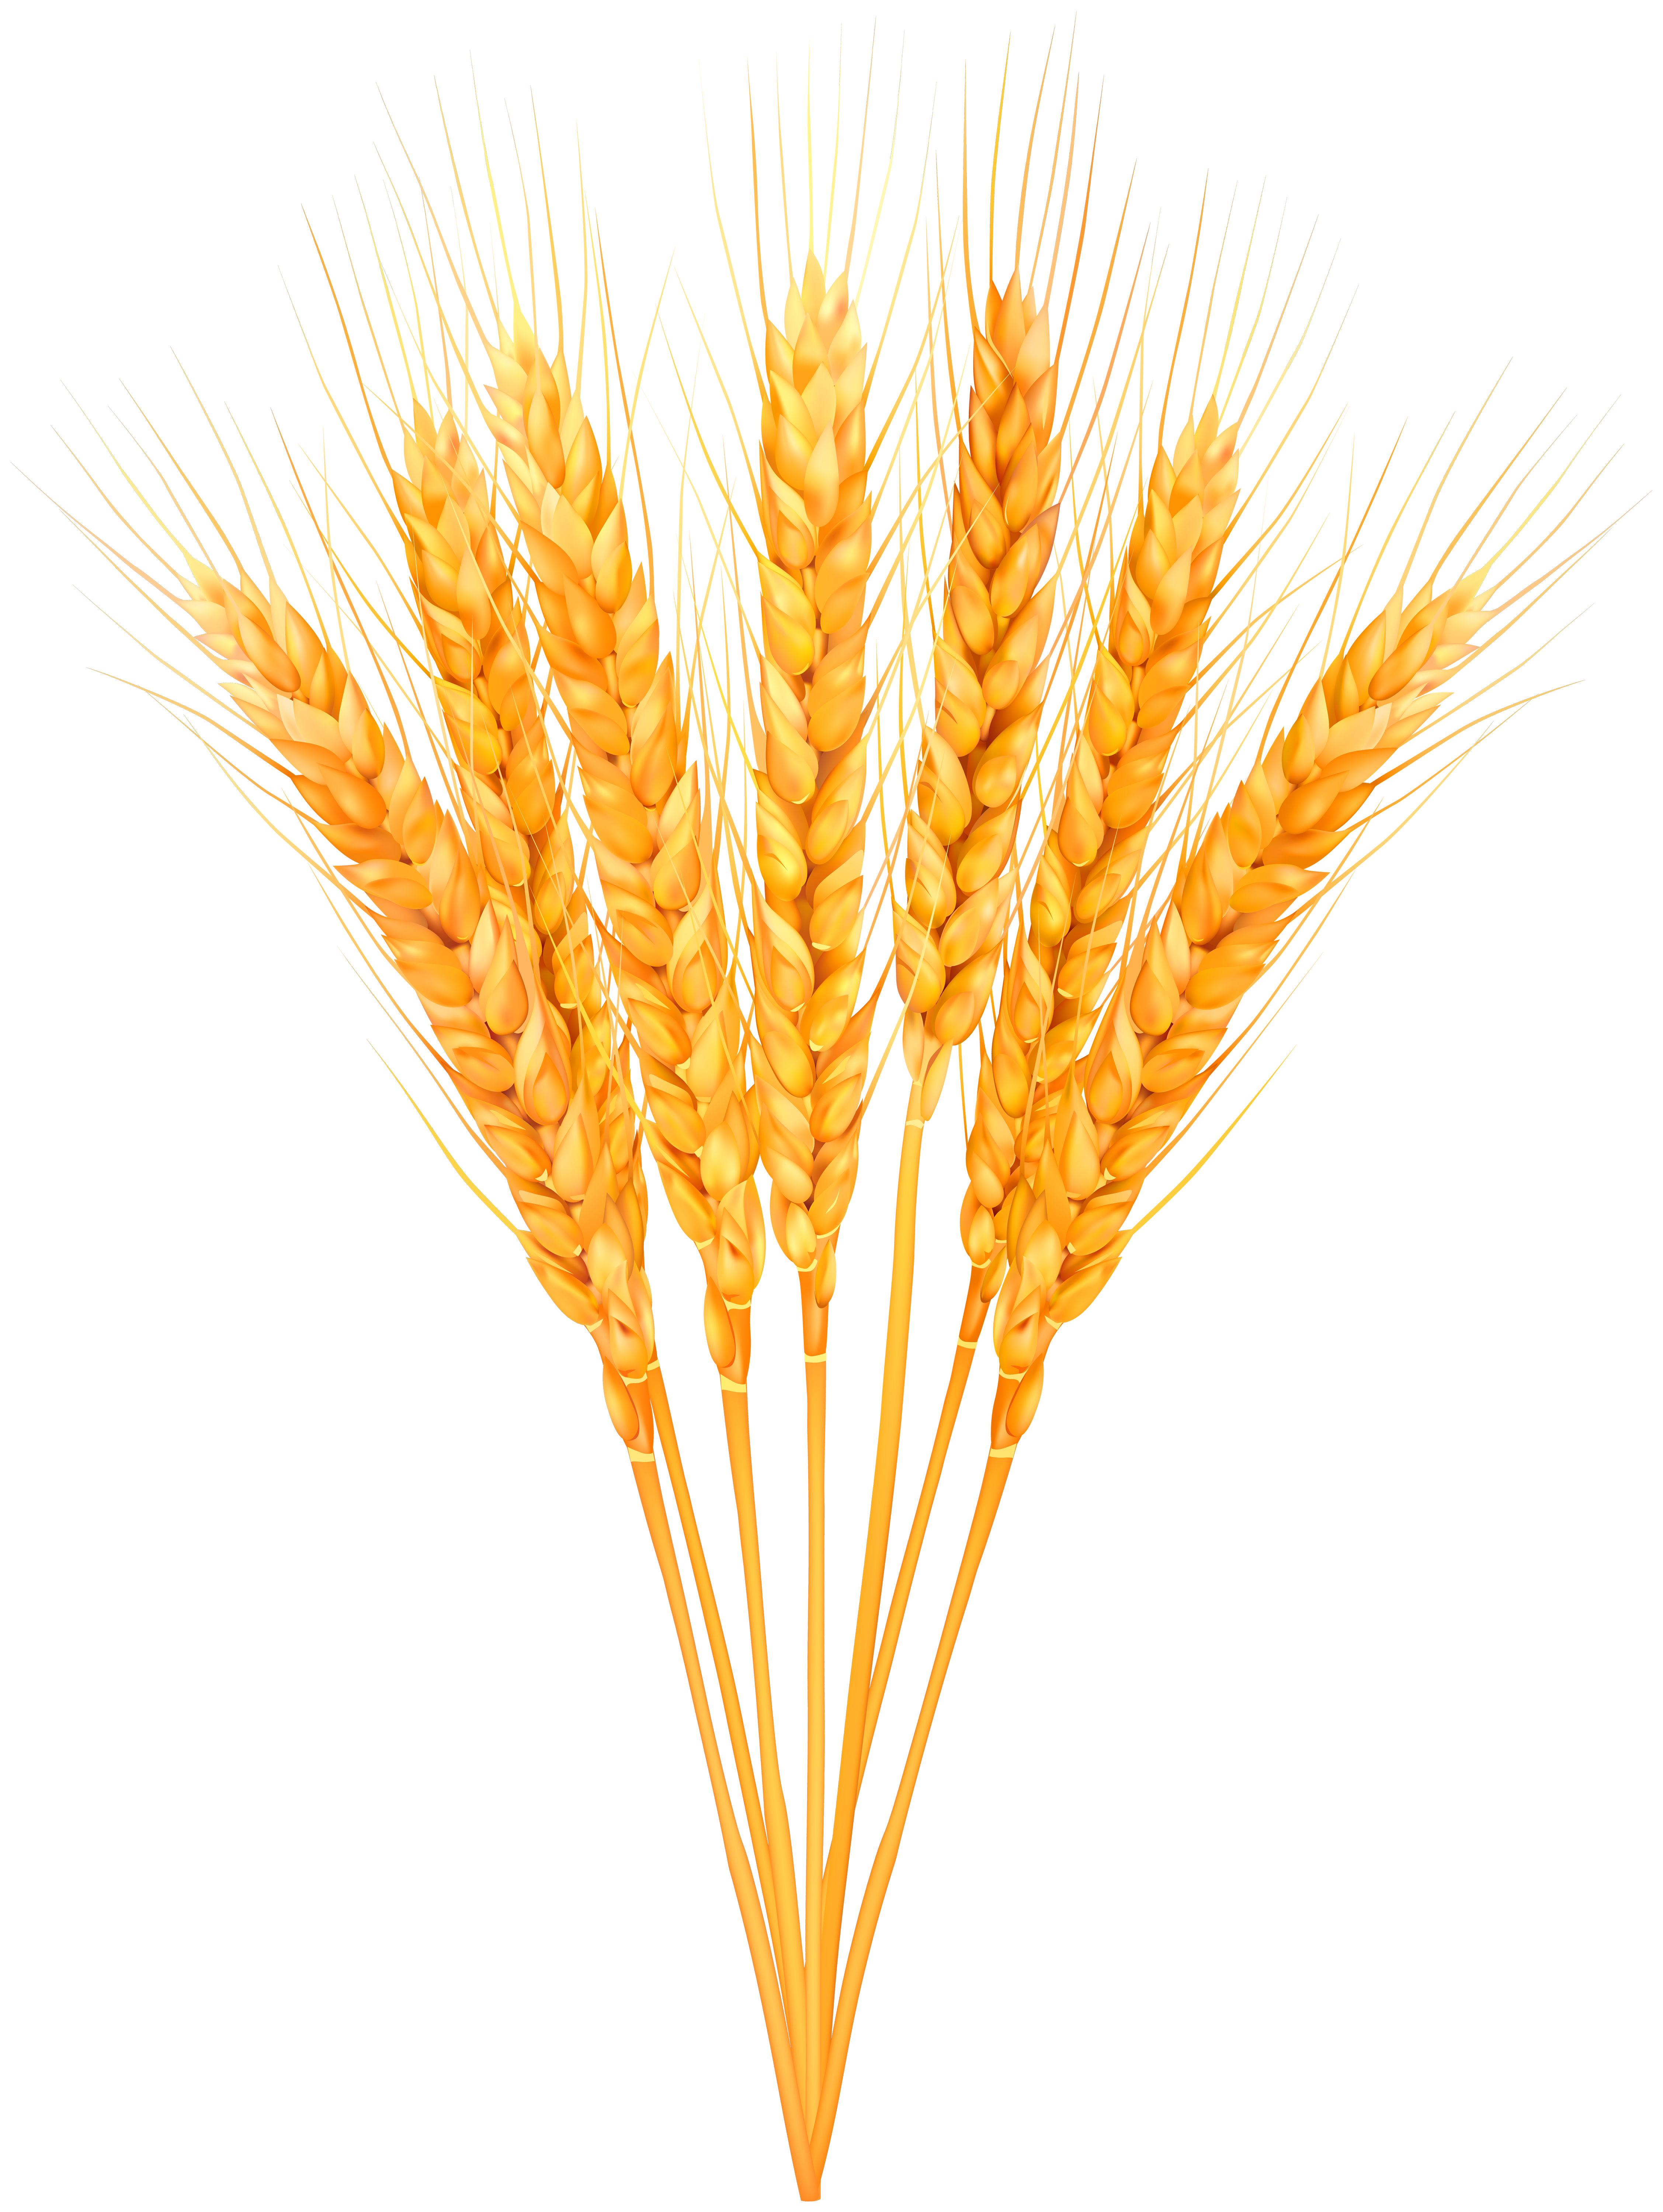 Ripe wheat classes.